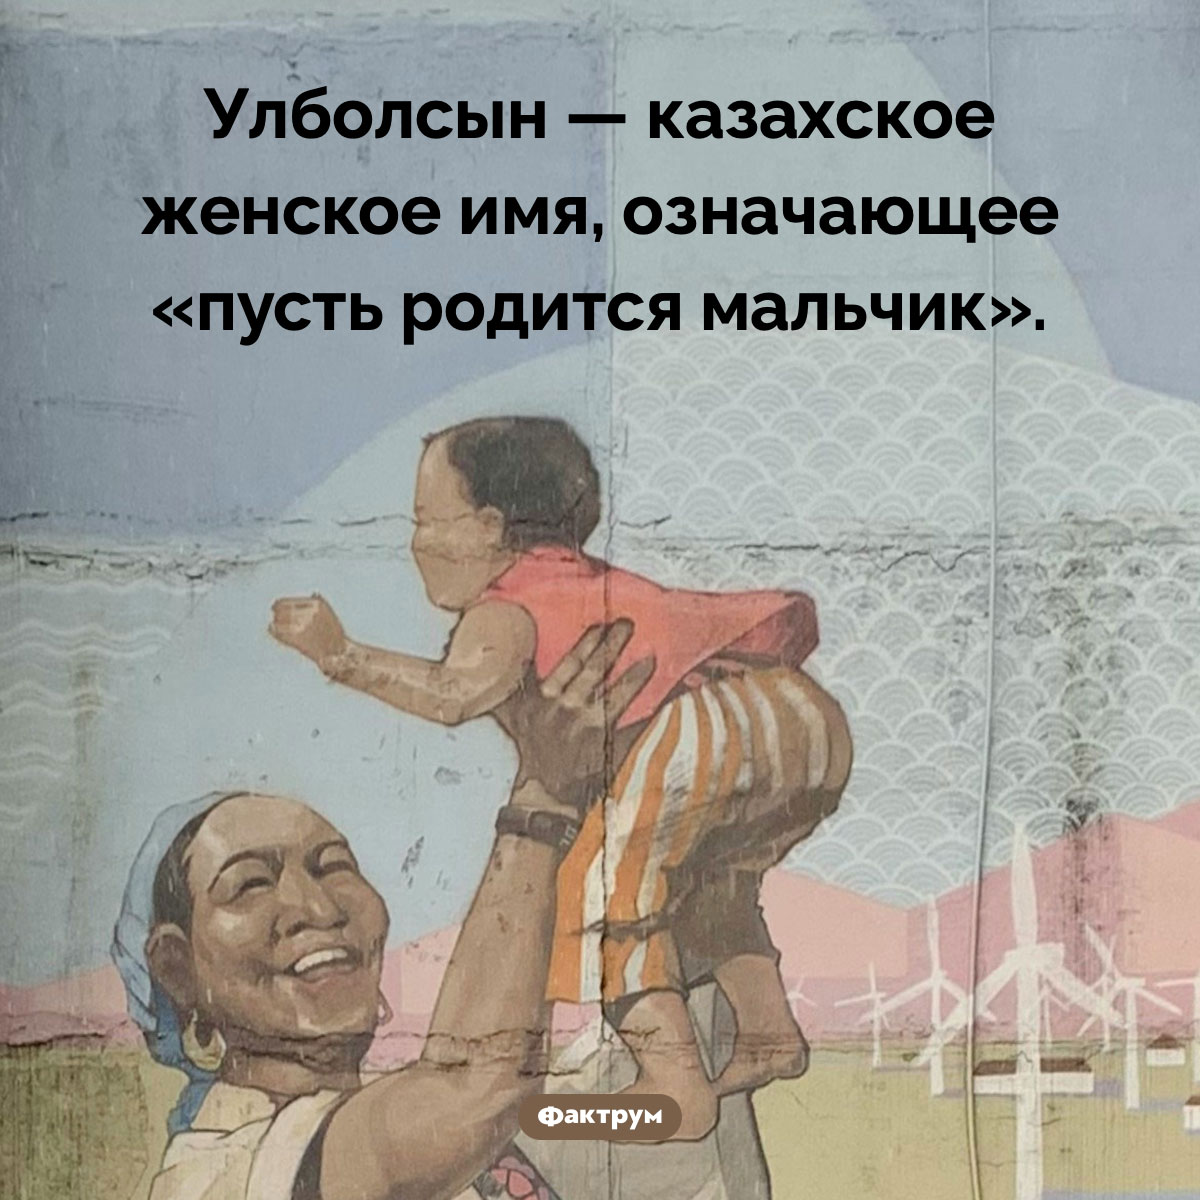 «Пусть родится мальчик». Улболсын — казахское женское имя, означающее «пусть родится мальчик».